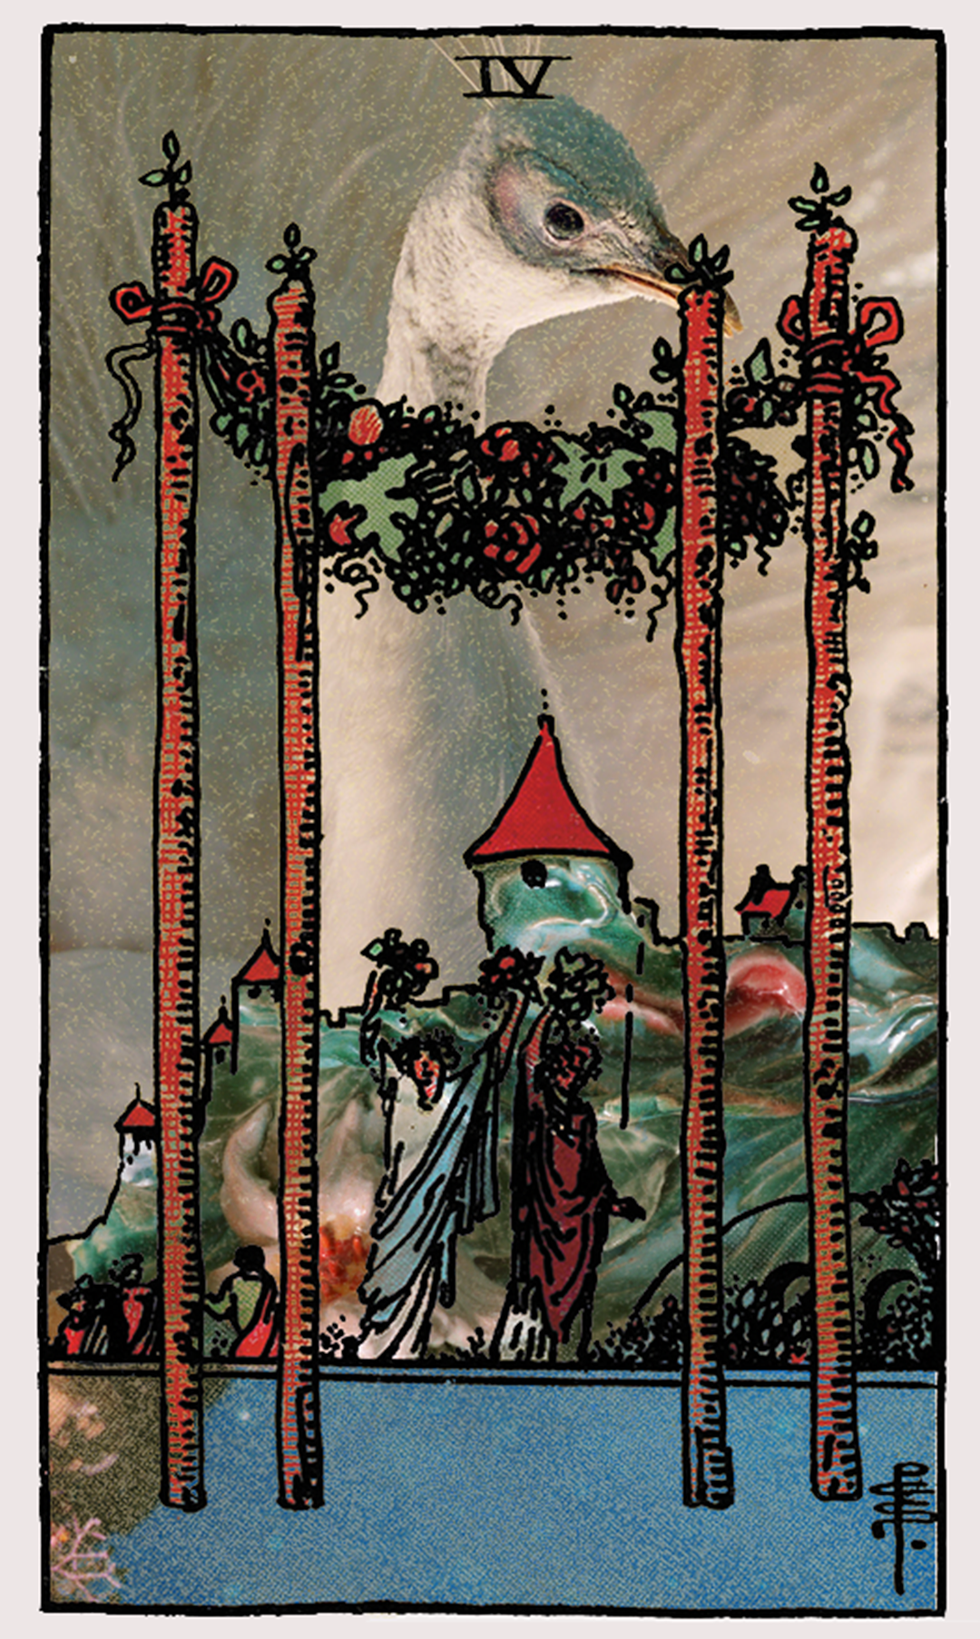 four of wands tarot card